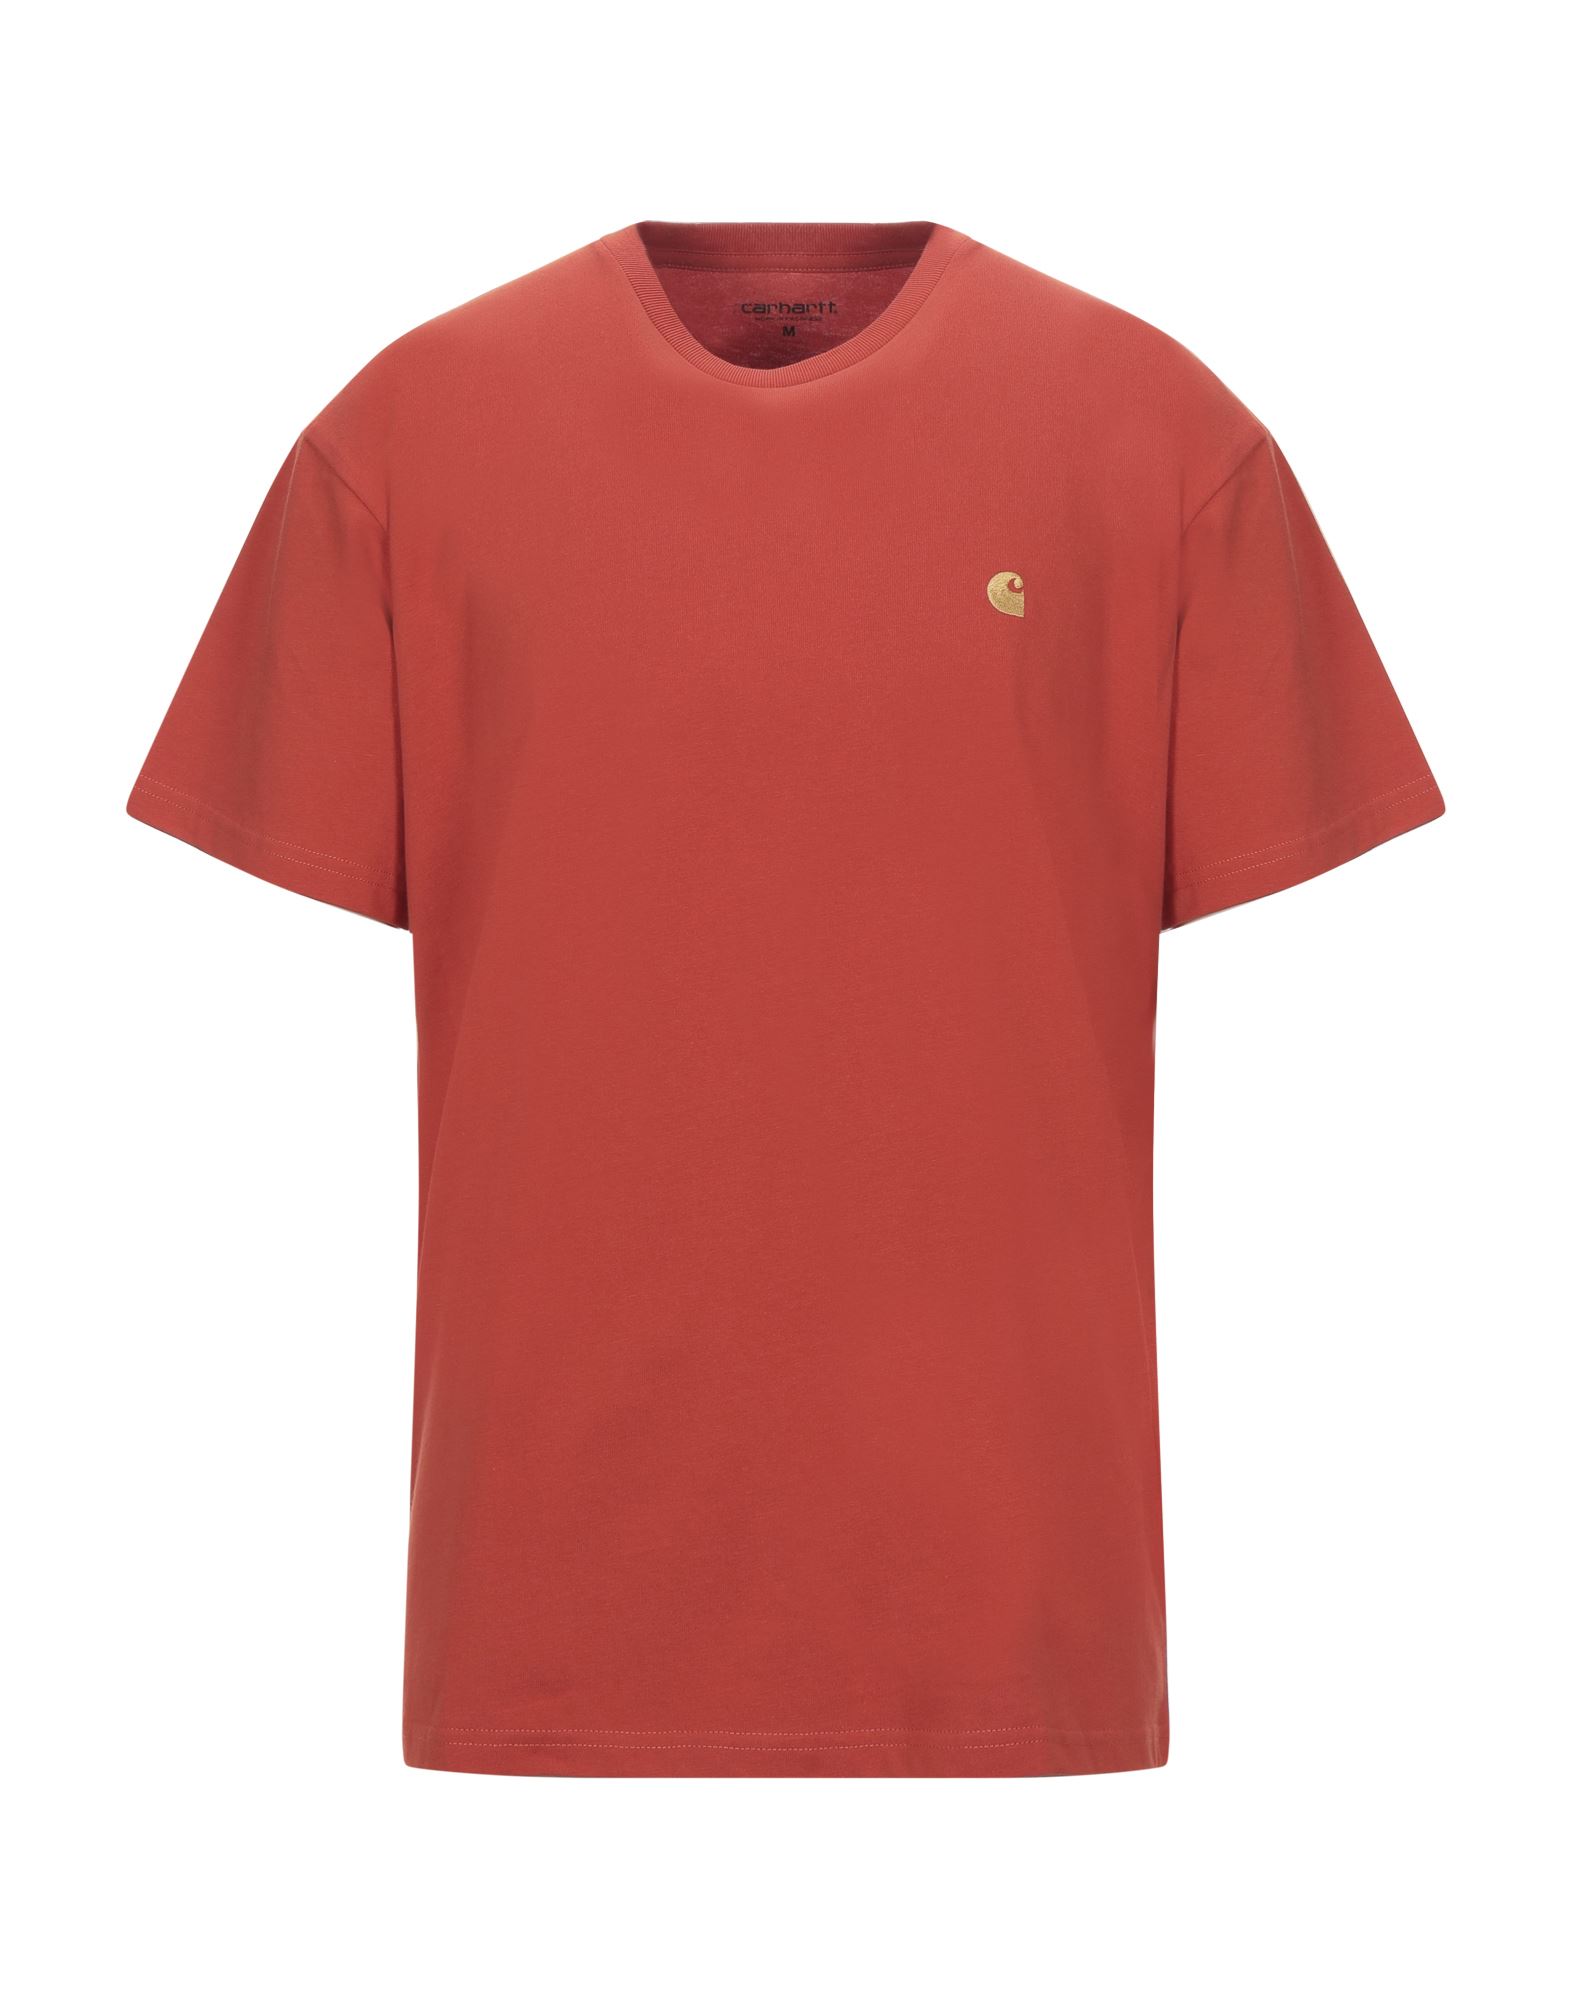 CARHARTT T-shirts - Item 12525557